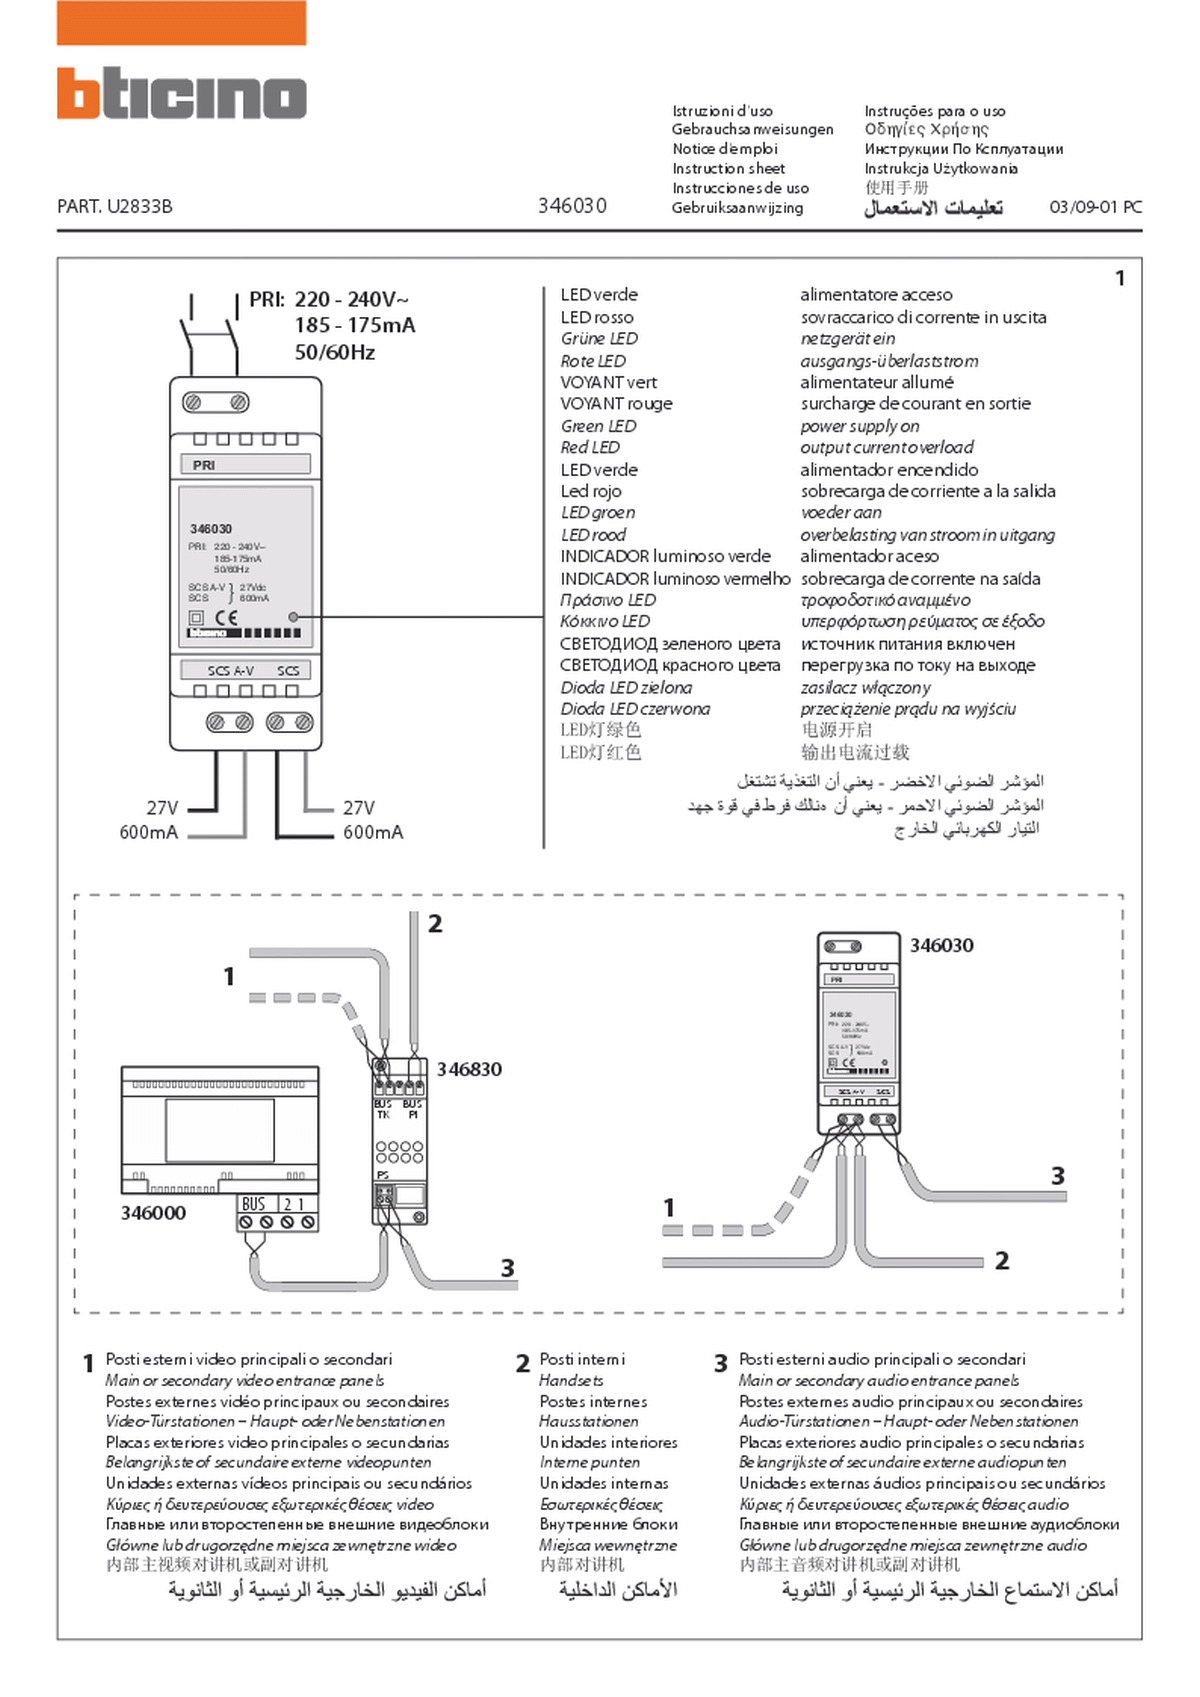 Fabrieksschema E-66 instruction sheet